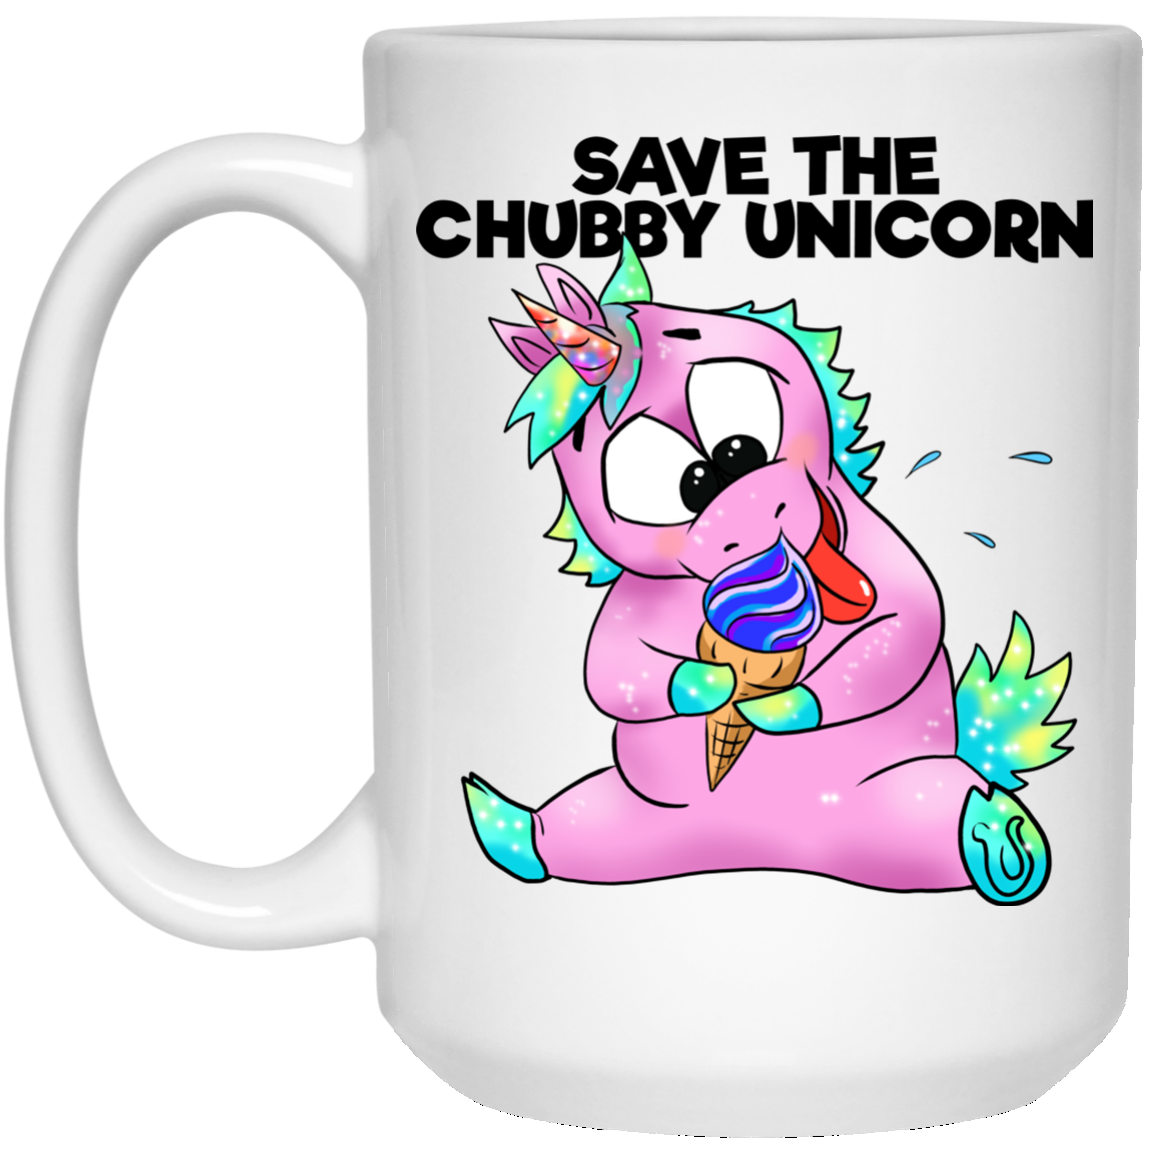 Unicorn Gifts - Funny Unicorn Mug, Save The Chubby Unicorns, Cartoon unicorns - GoneBold.gift